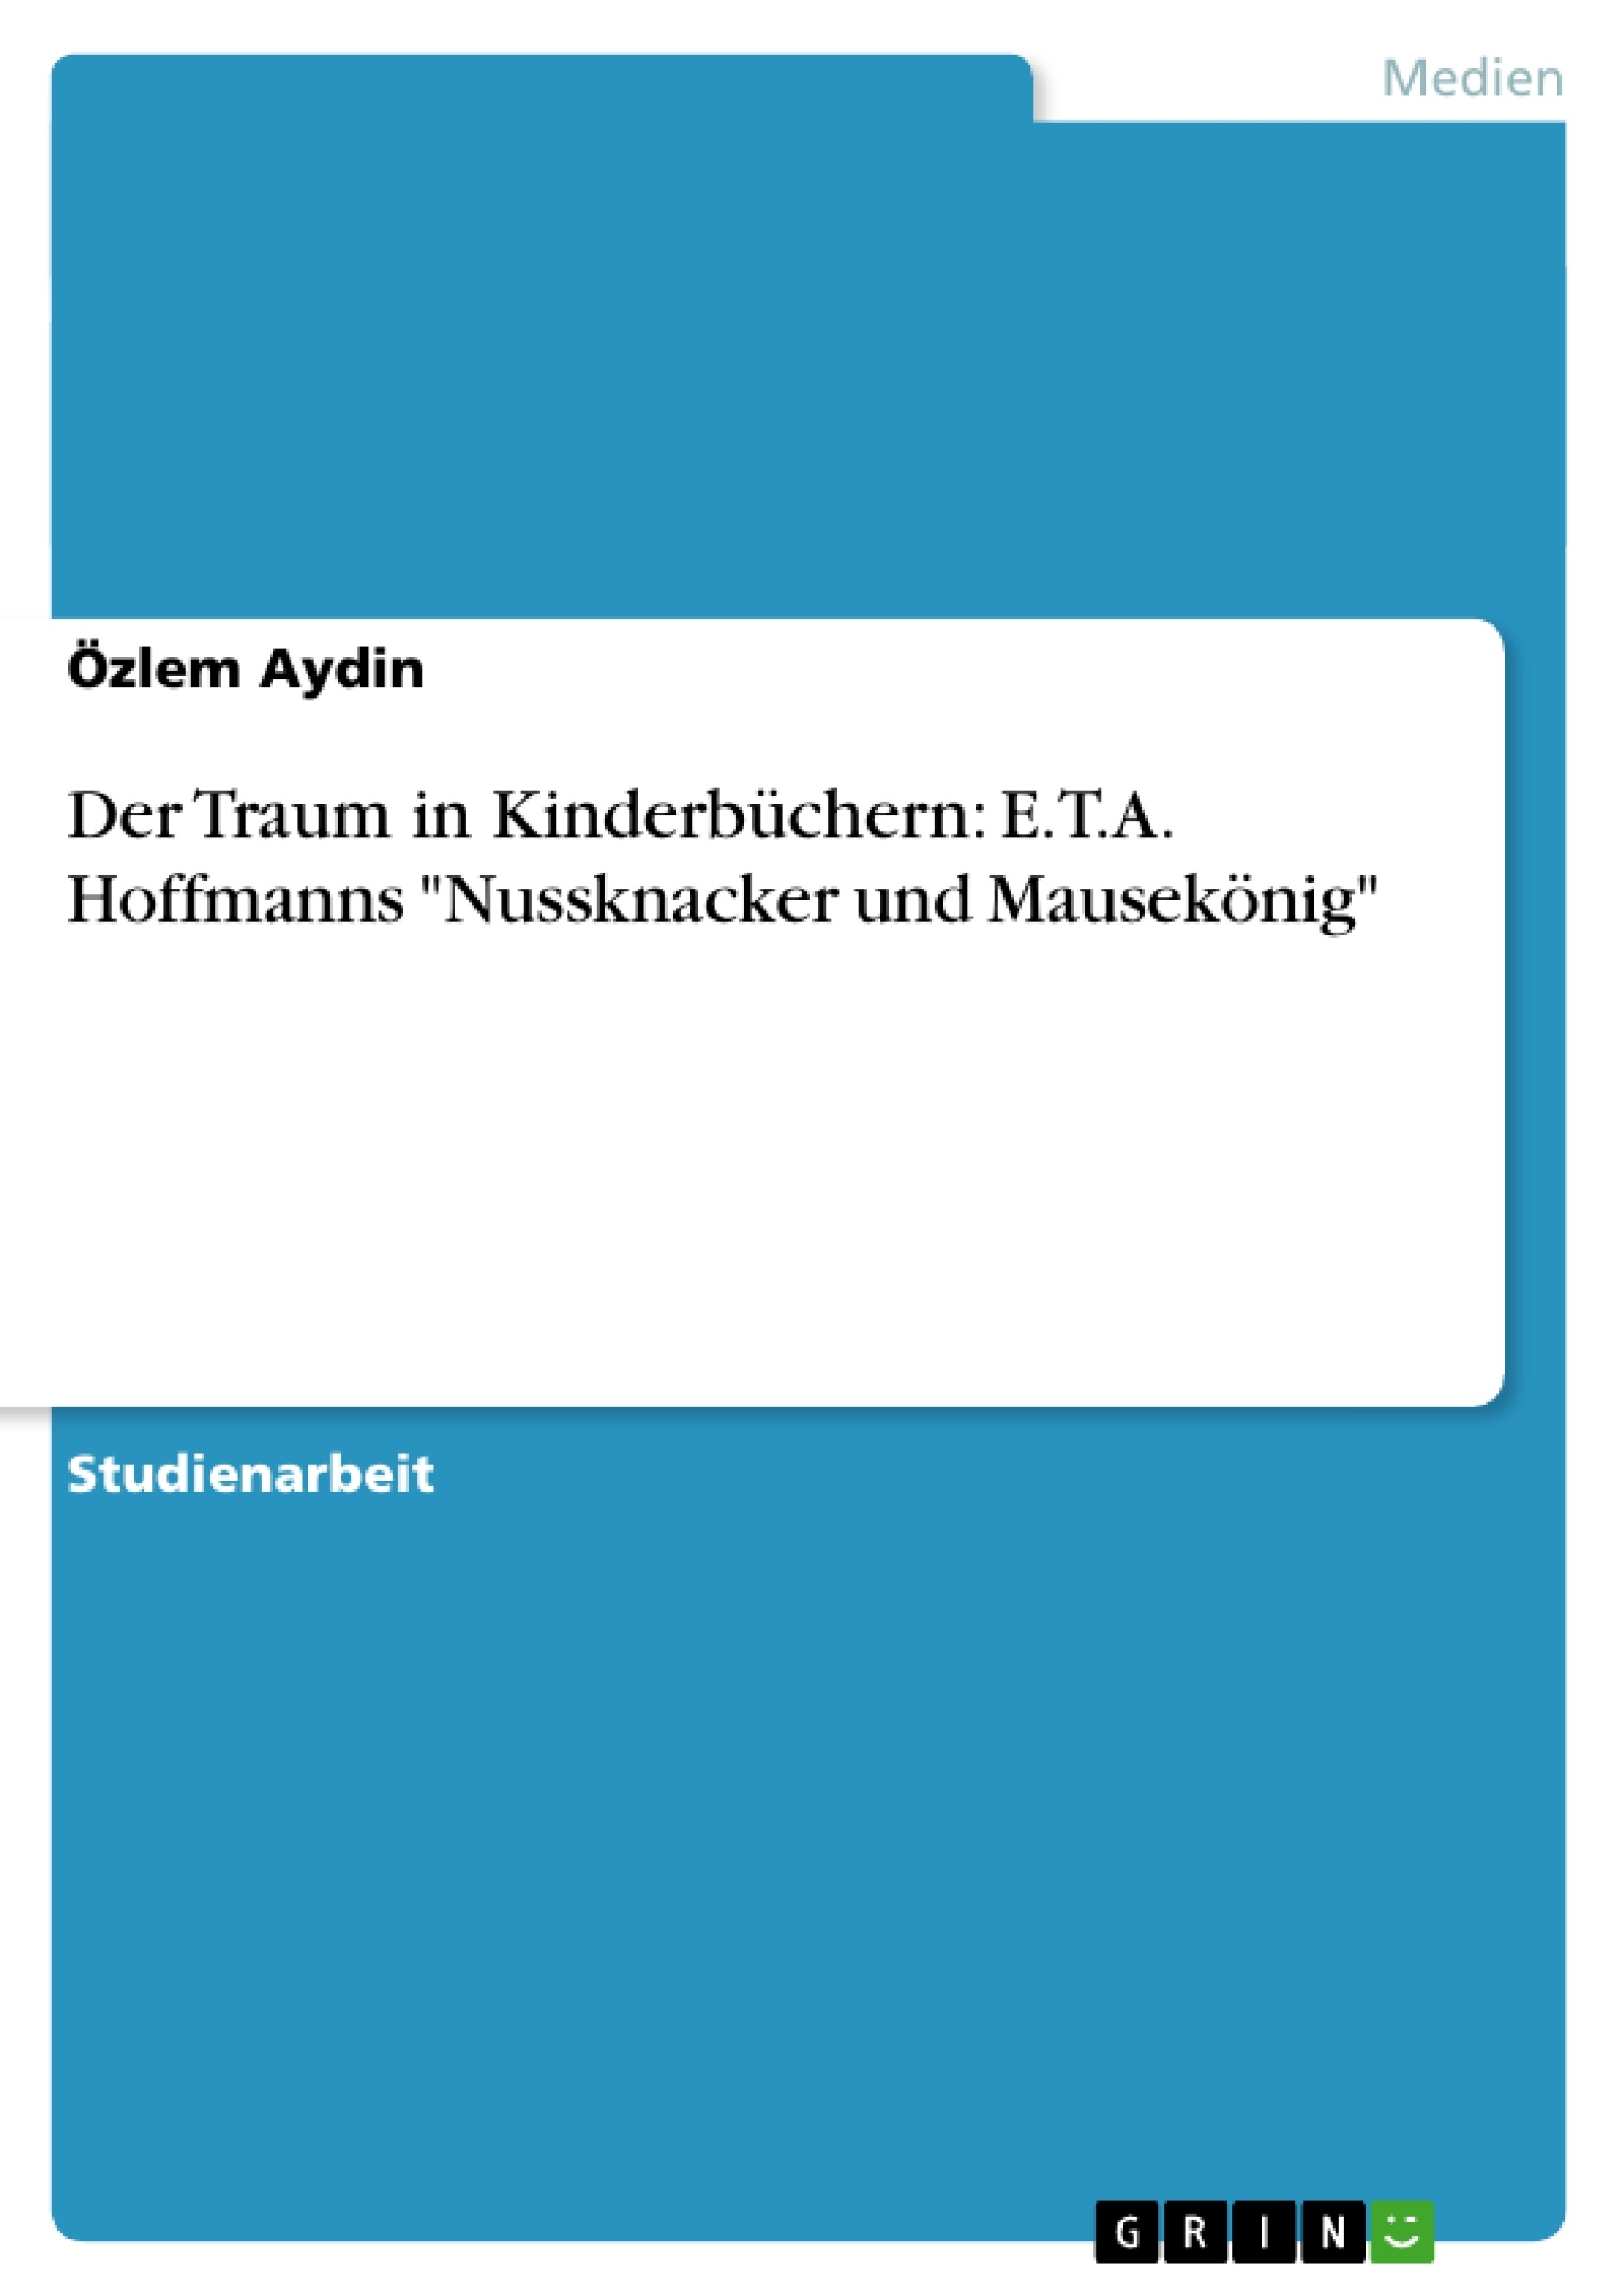 Title: Der Traum in Kinderbüchern: E.T.A. Hoffmanns "Nussknacker und Mausekönig"